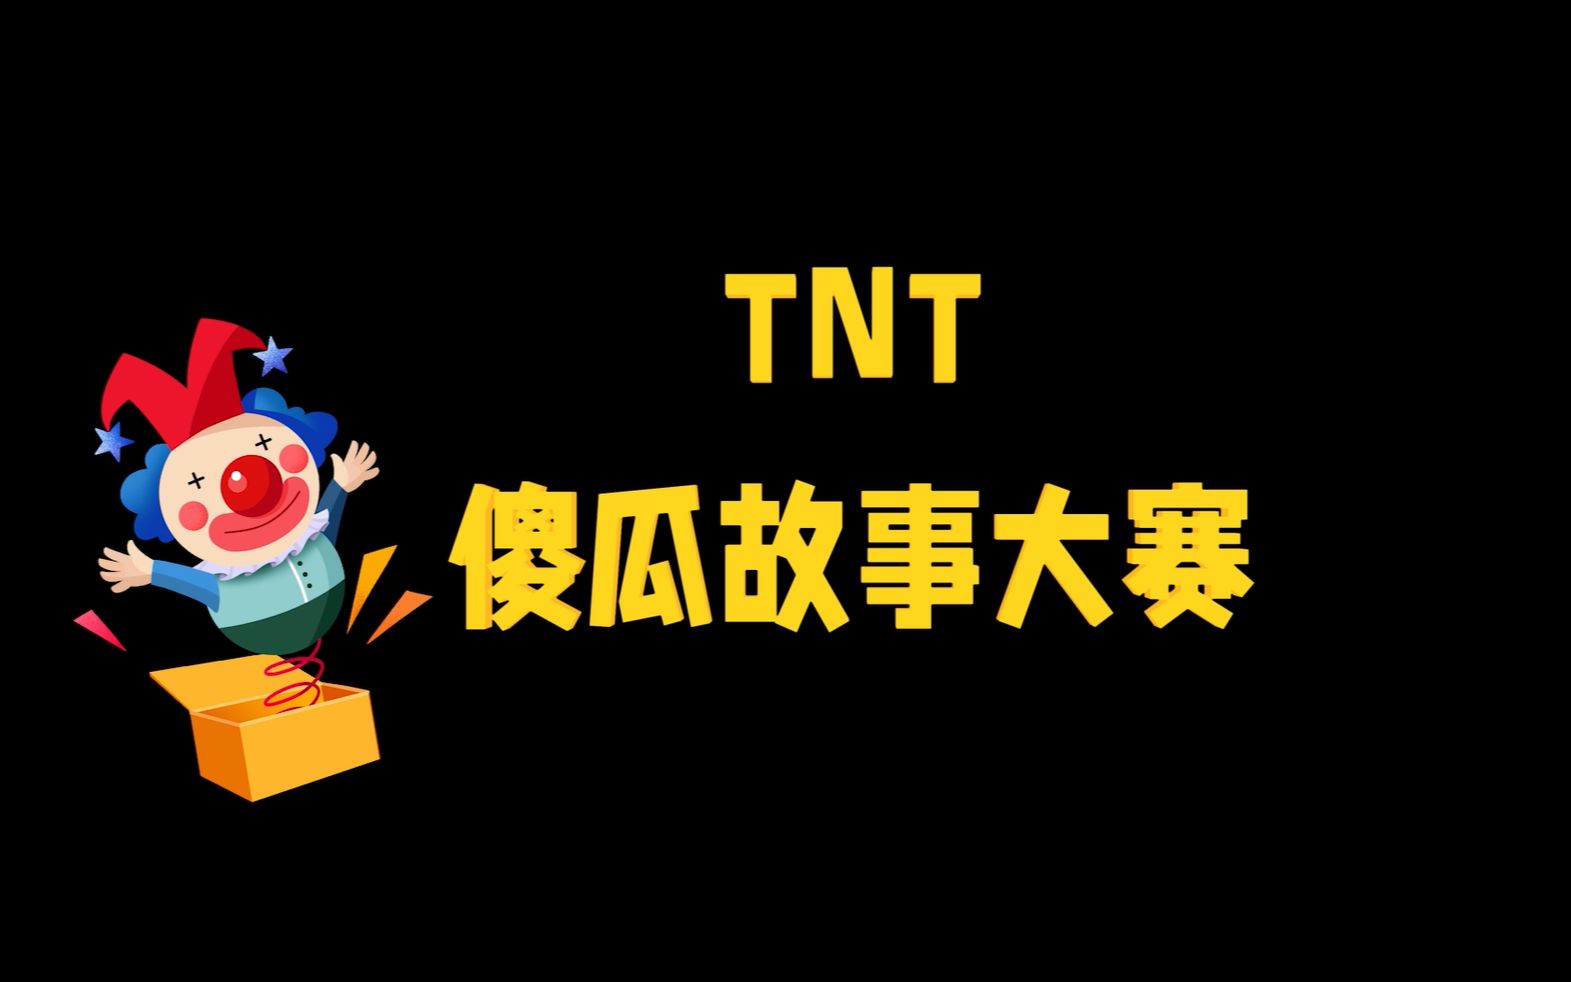 【时代少年团】TNT“傻瓜”故事大赛